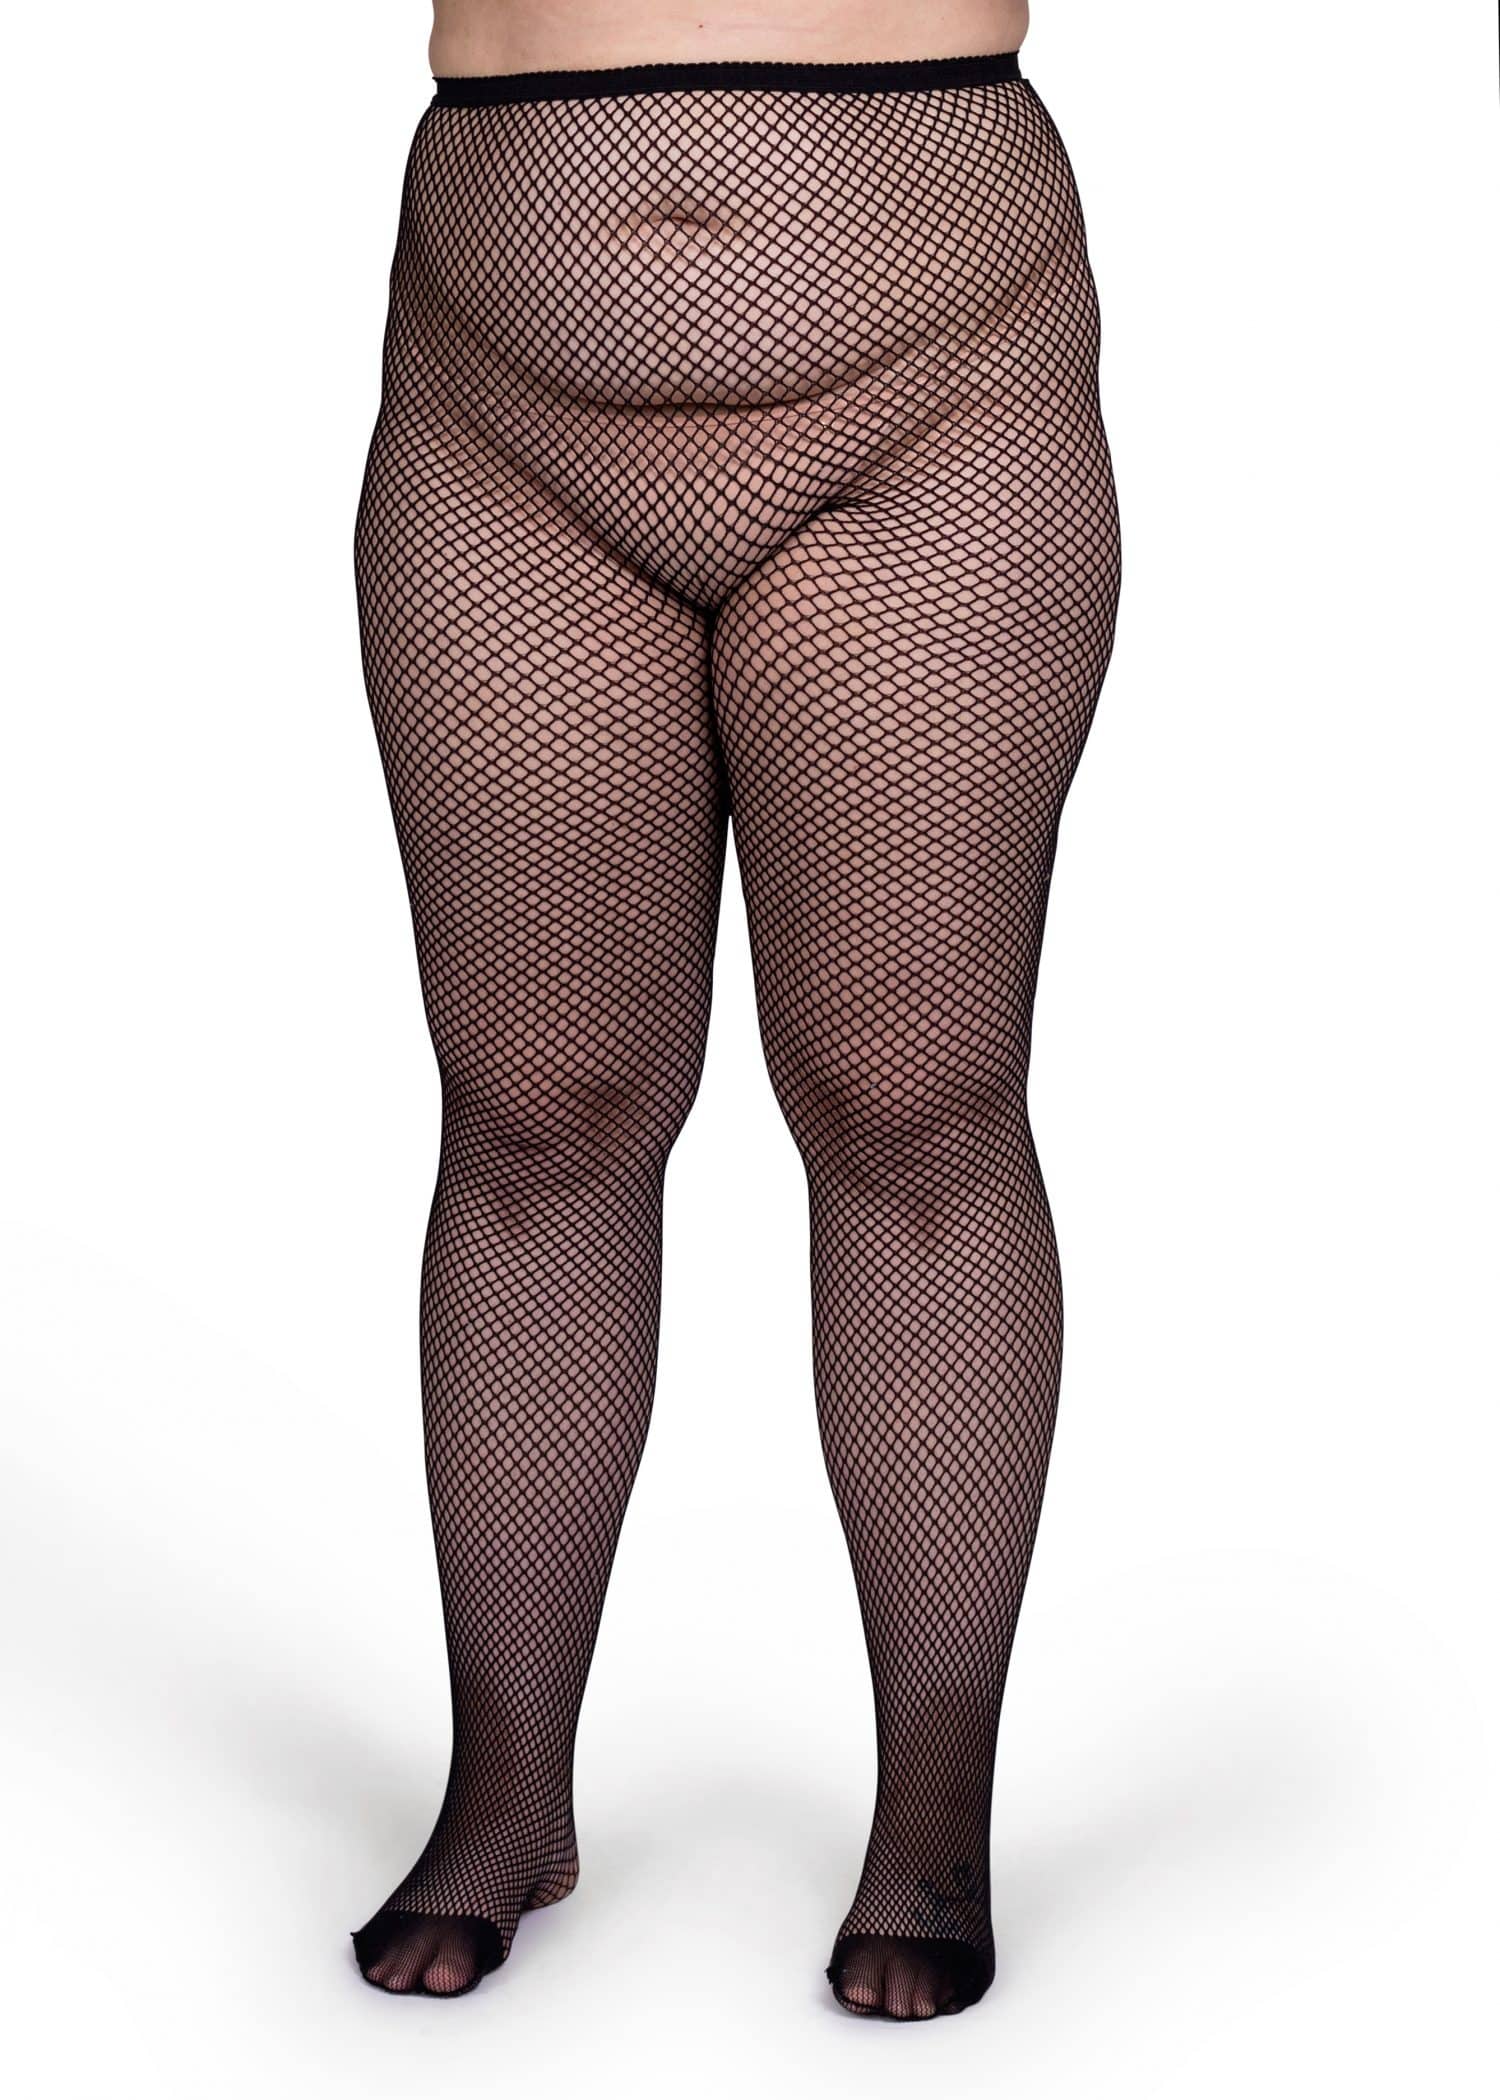 christina osei add photo plus size net stockings